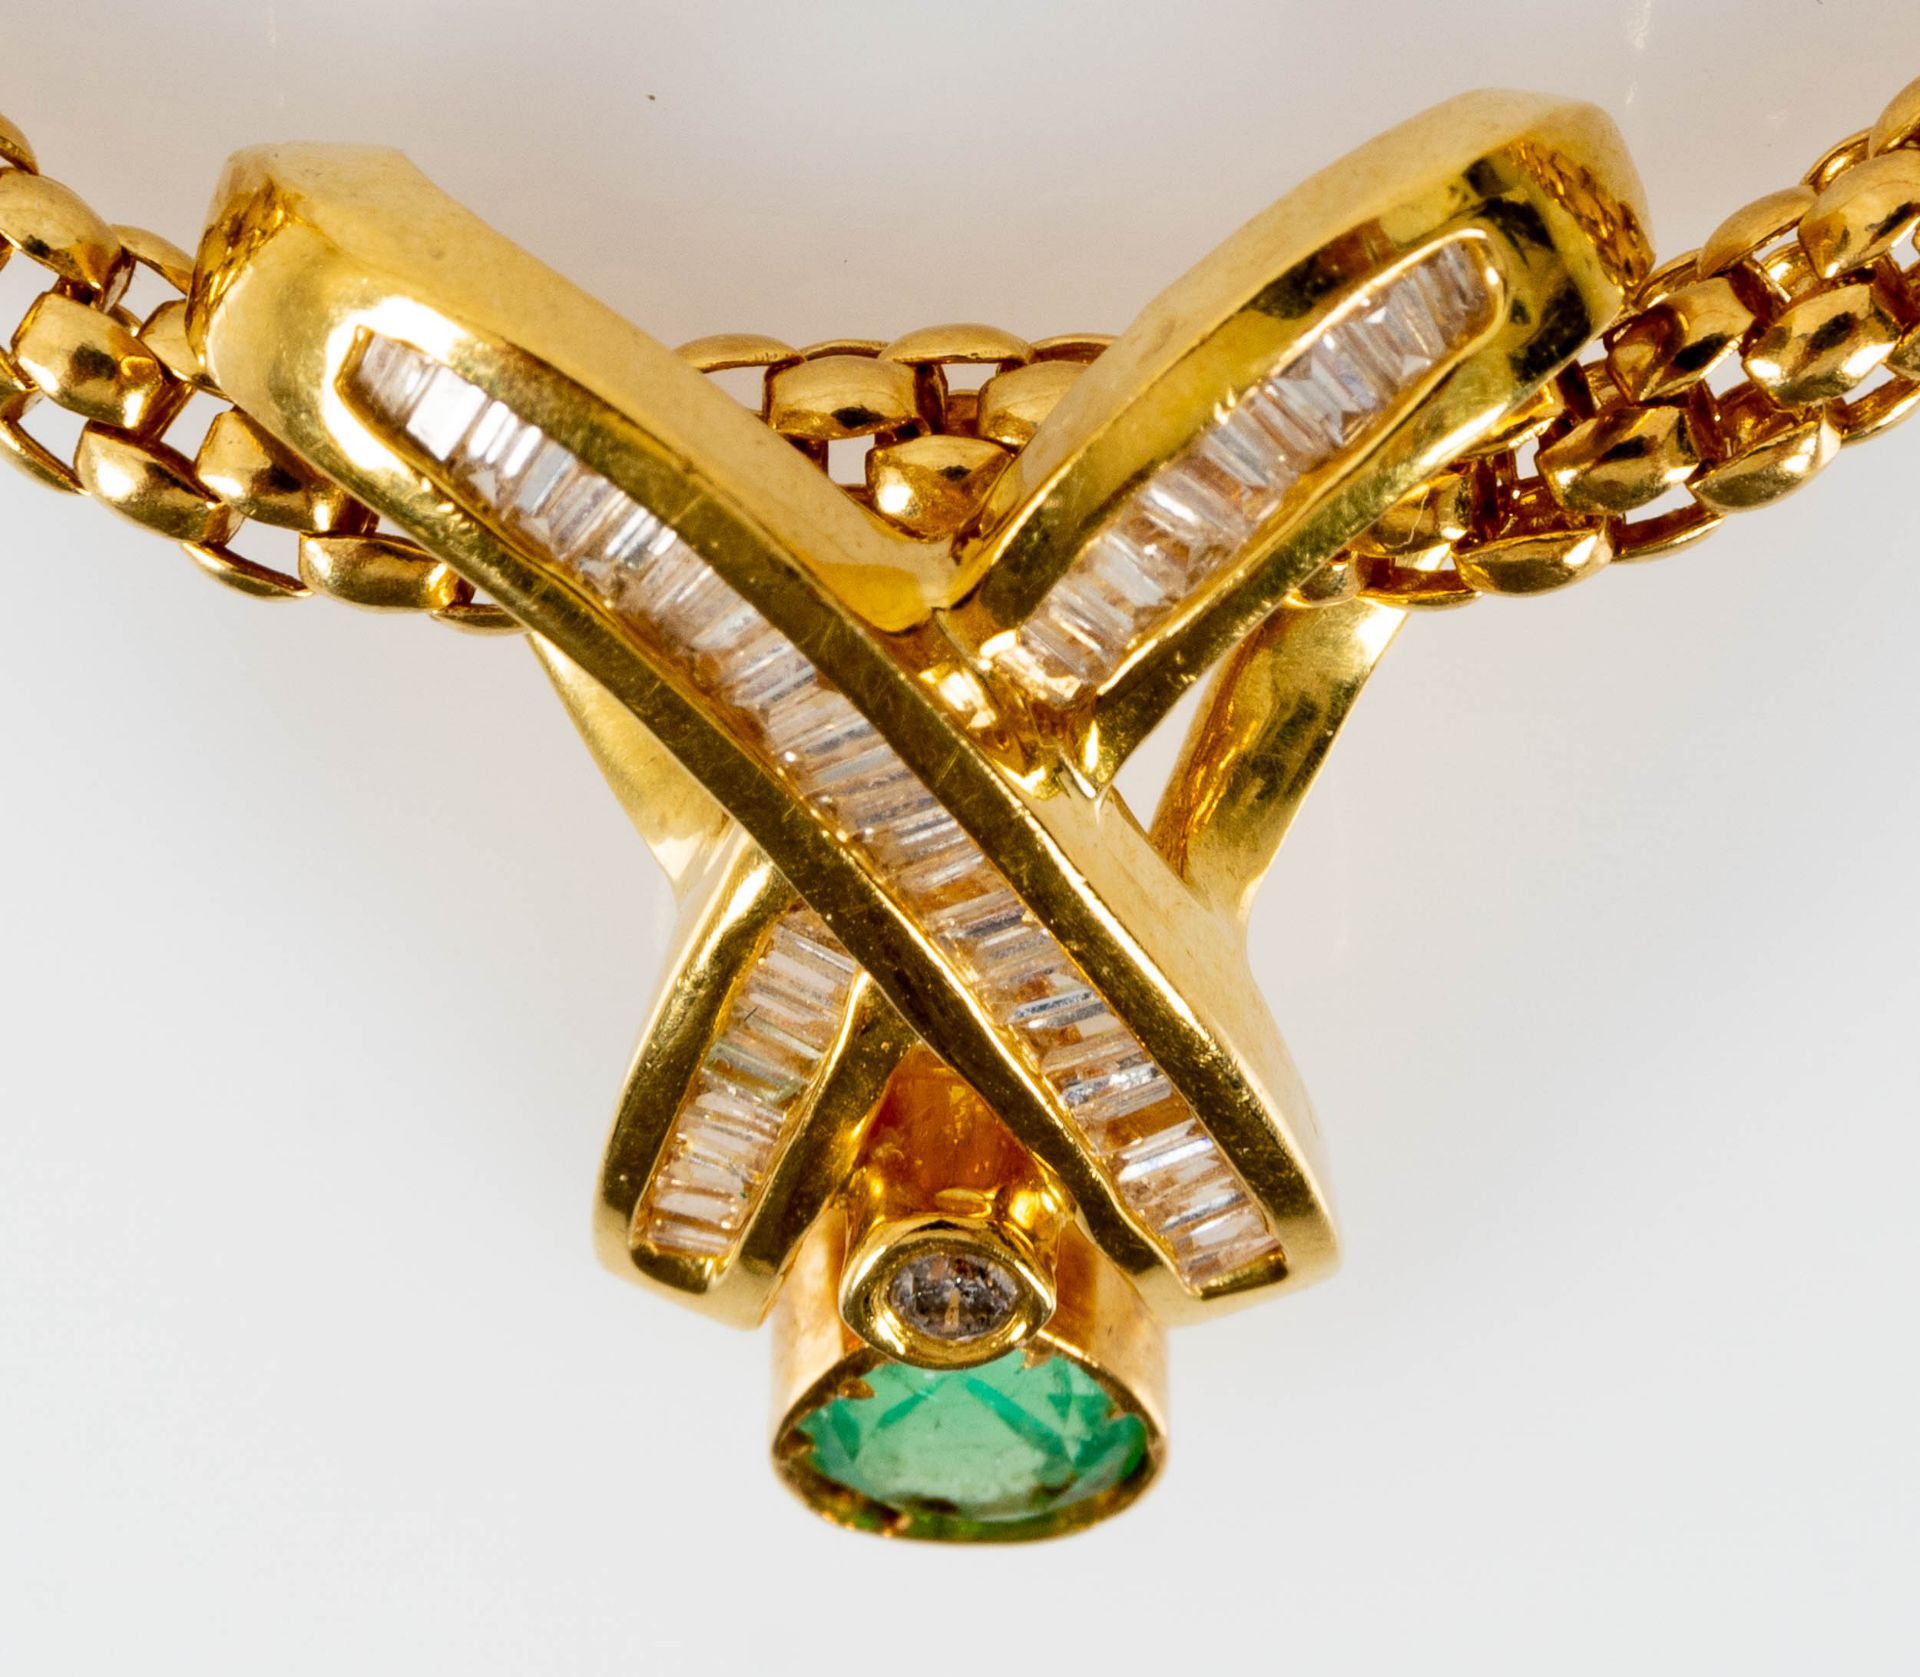 Prächtiges Smaragd-Brillant-Collier, bewegliche, ca. 46 cm lange tauförmige Halskette mit einer Bre - Bild 6 aus 10